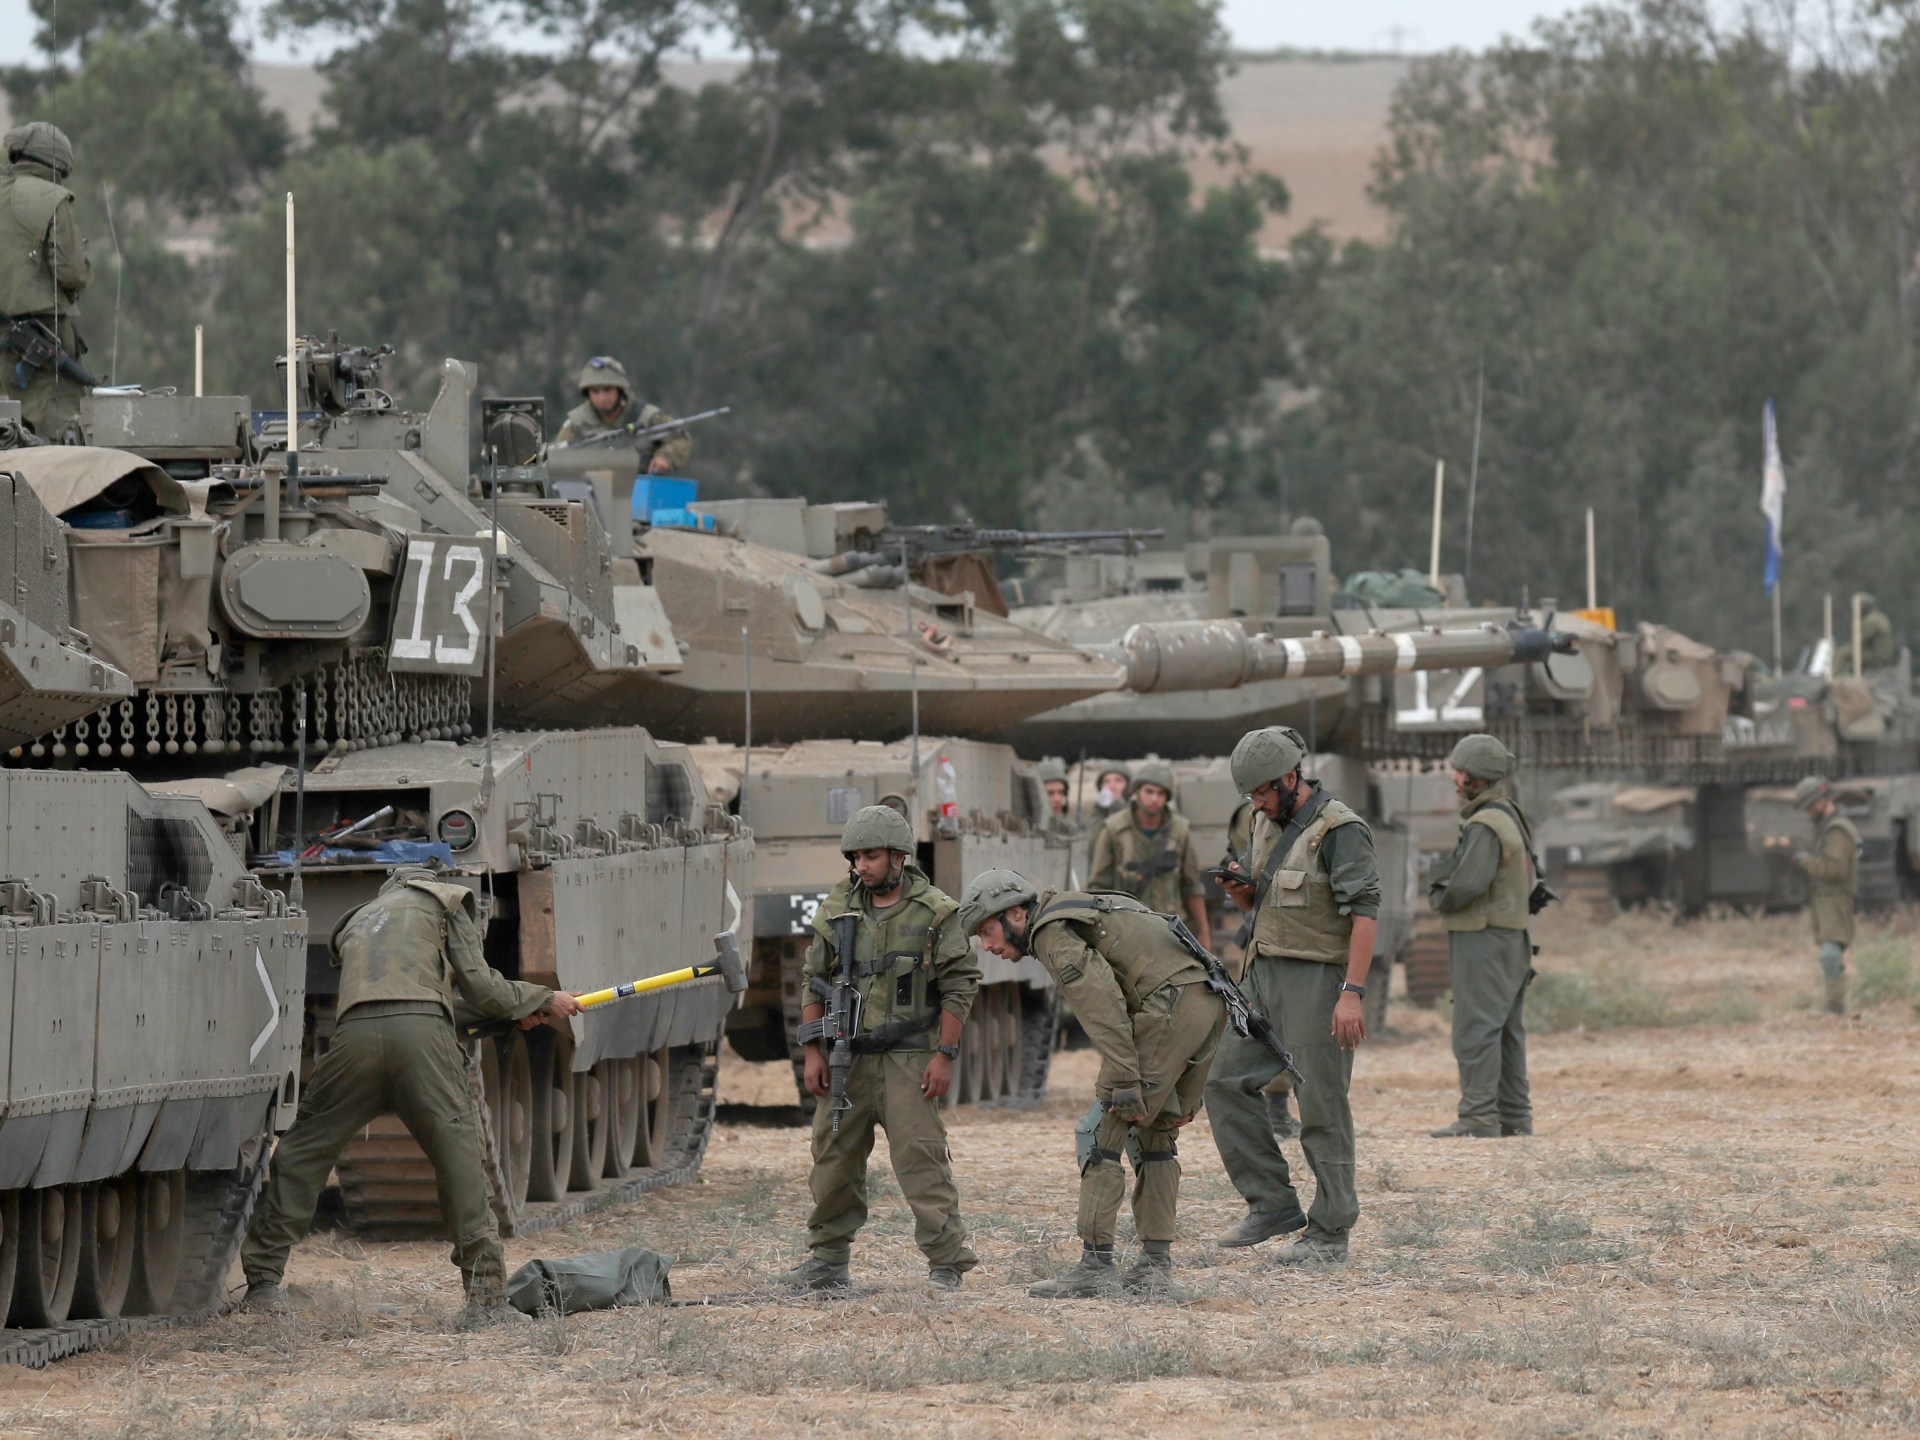 بروتوكول هانيبال الإسرائيلي.. جندي قتيل خير من جندي أسير | الموسوعة – البوكس نيوز